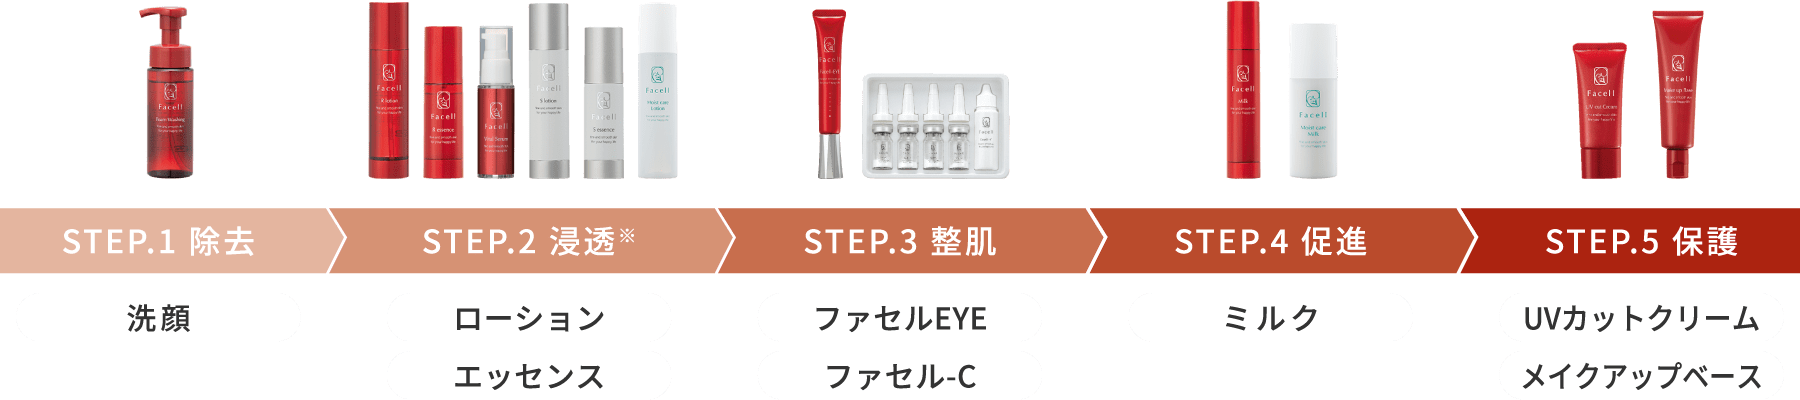 STEP.1 除去 洗顔 STEP.2 浸透 ローション エッセンス STEP.3 整肌 ファセルEYE ファセル-C STEP.4促進 ミルク STEP.5 保護 UVカットクリーム メイクアップベース